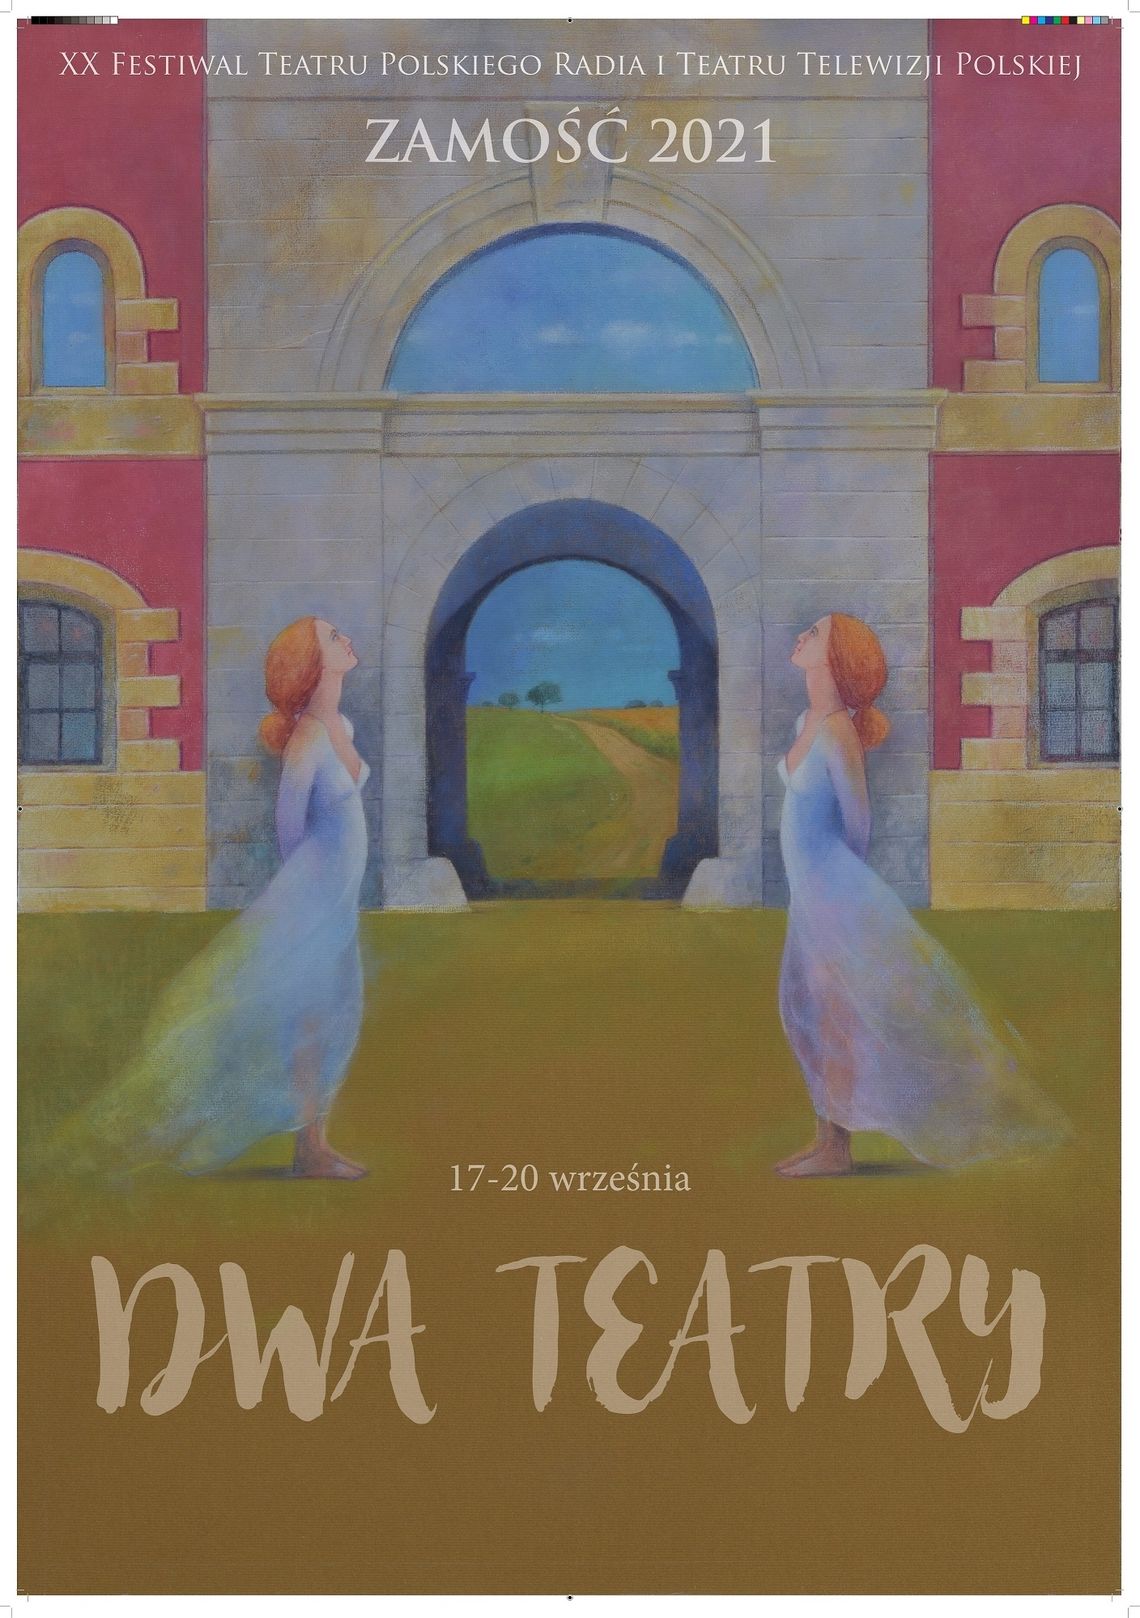 XX Festiwal "Dwa Teatry 2021" w Zamościu (PROGRAM)